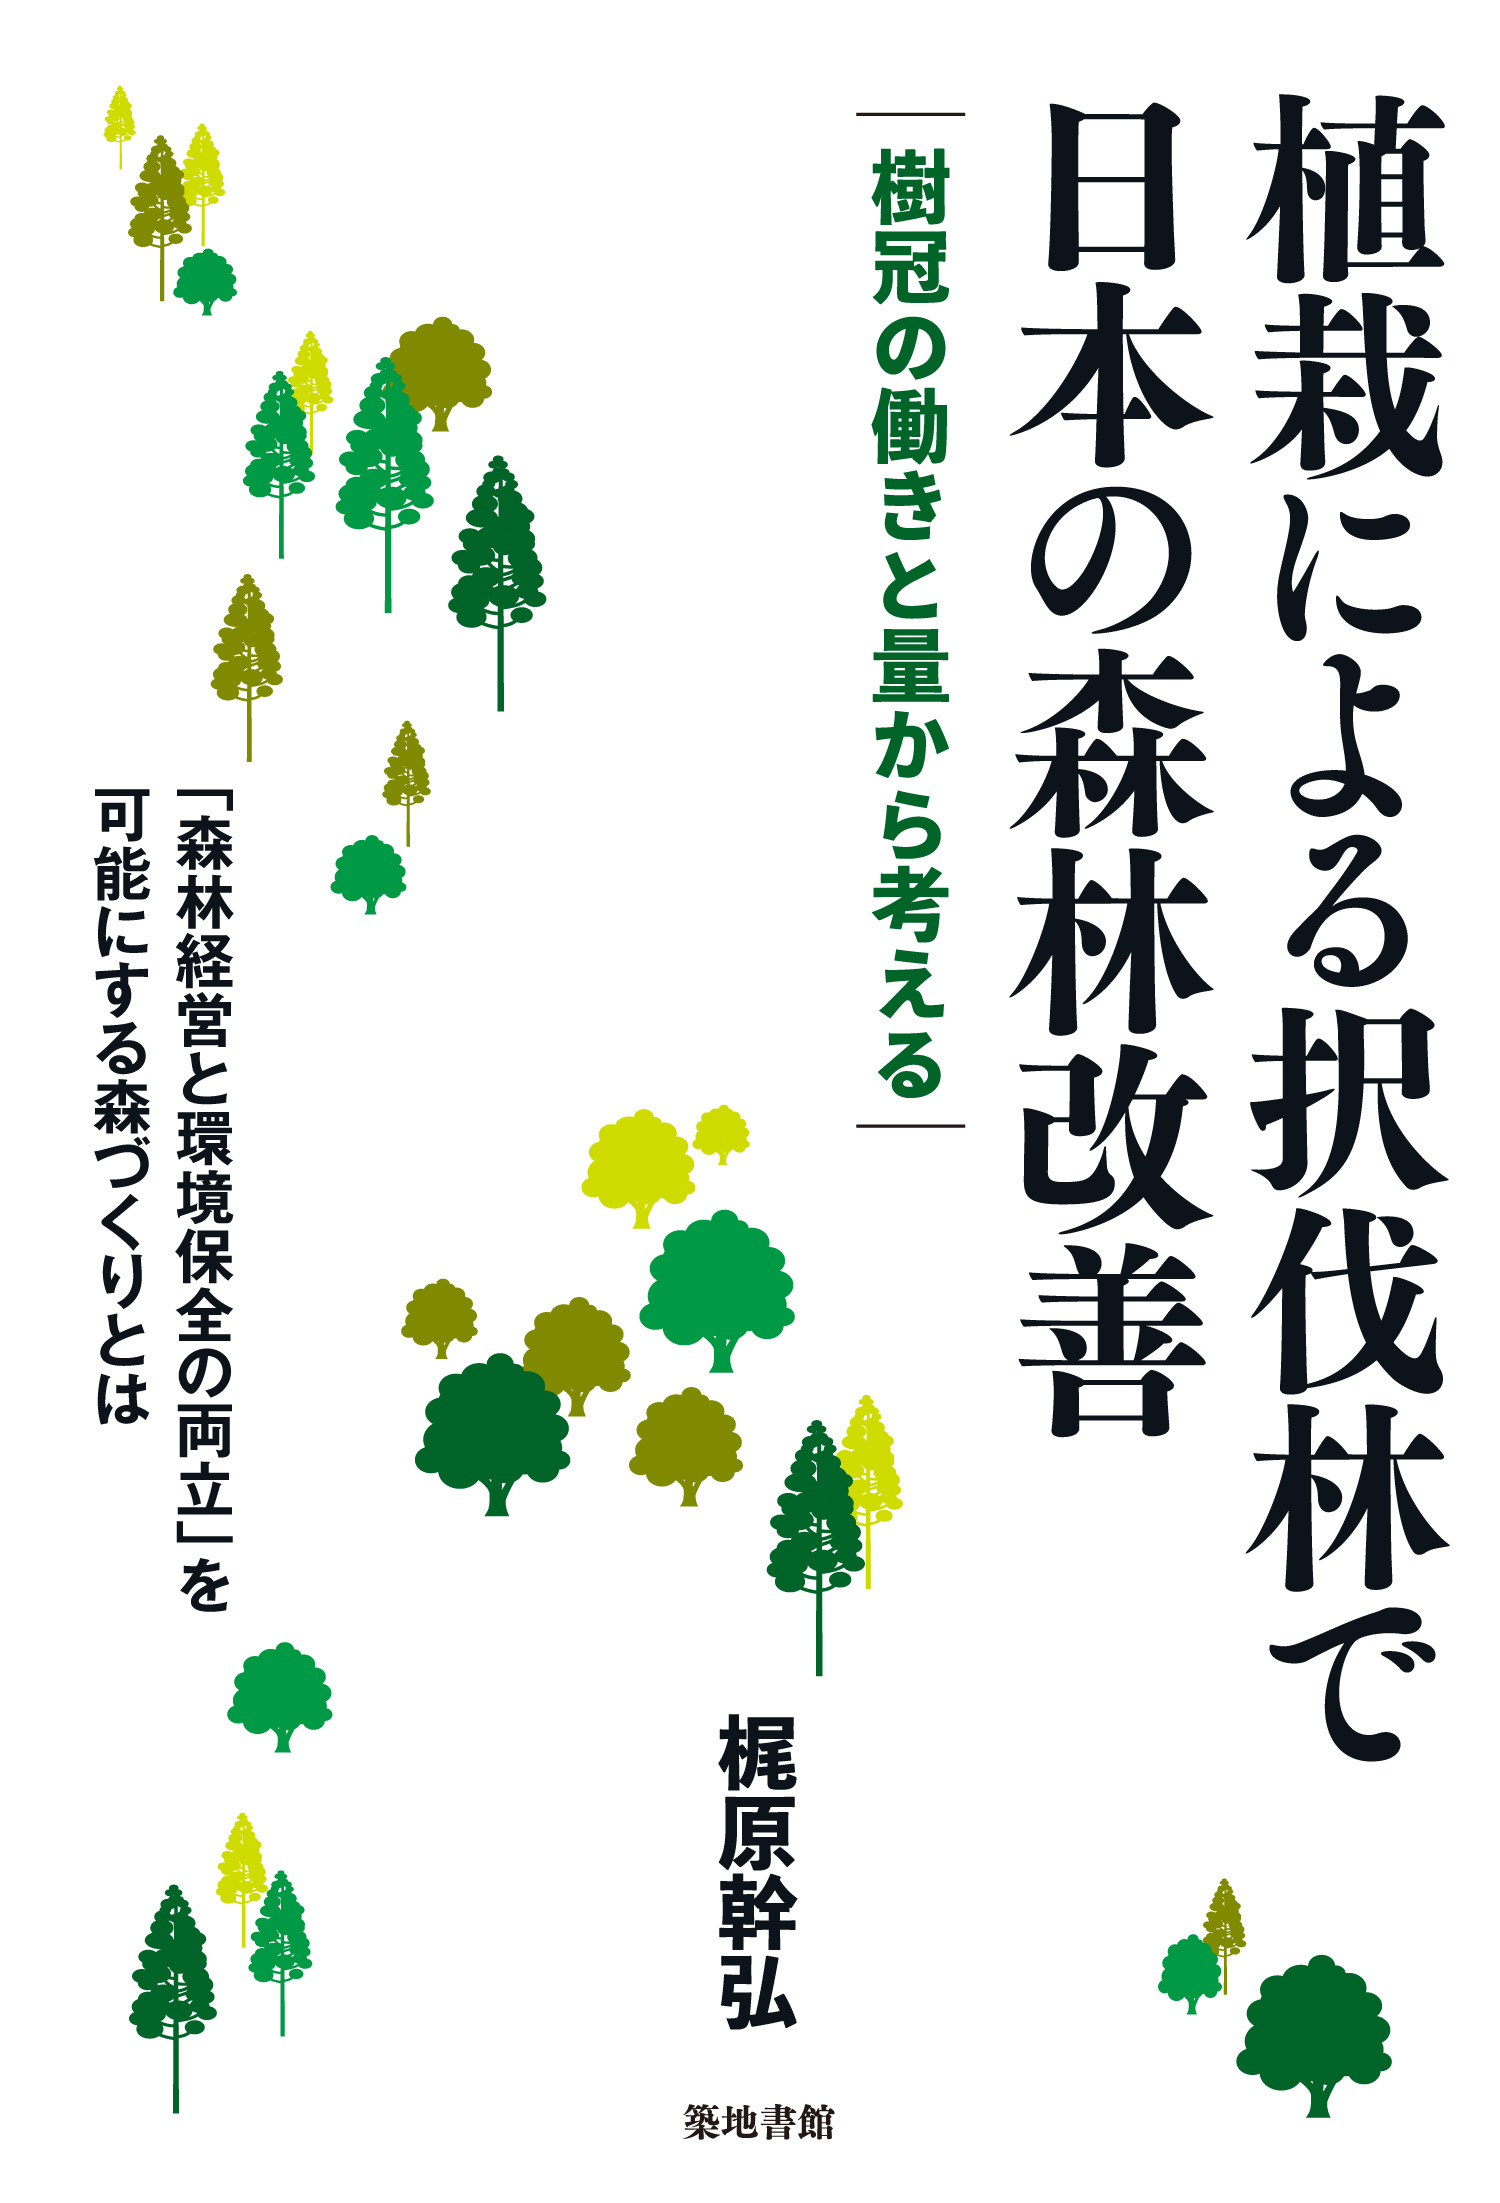 植栽による択伐林で日本の森林改善の商品画像